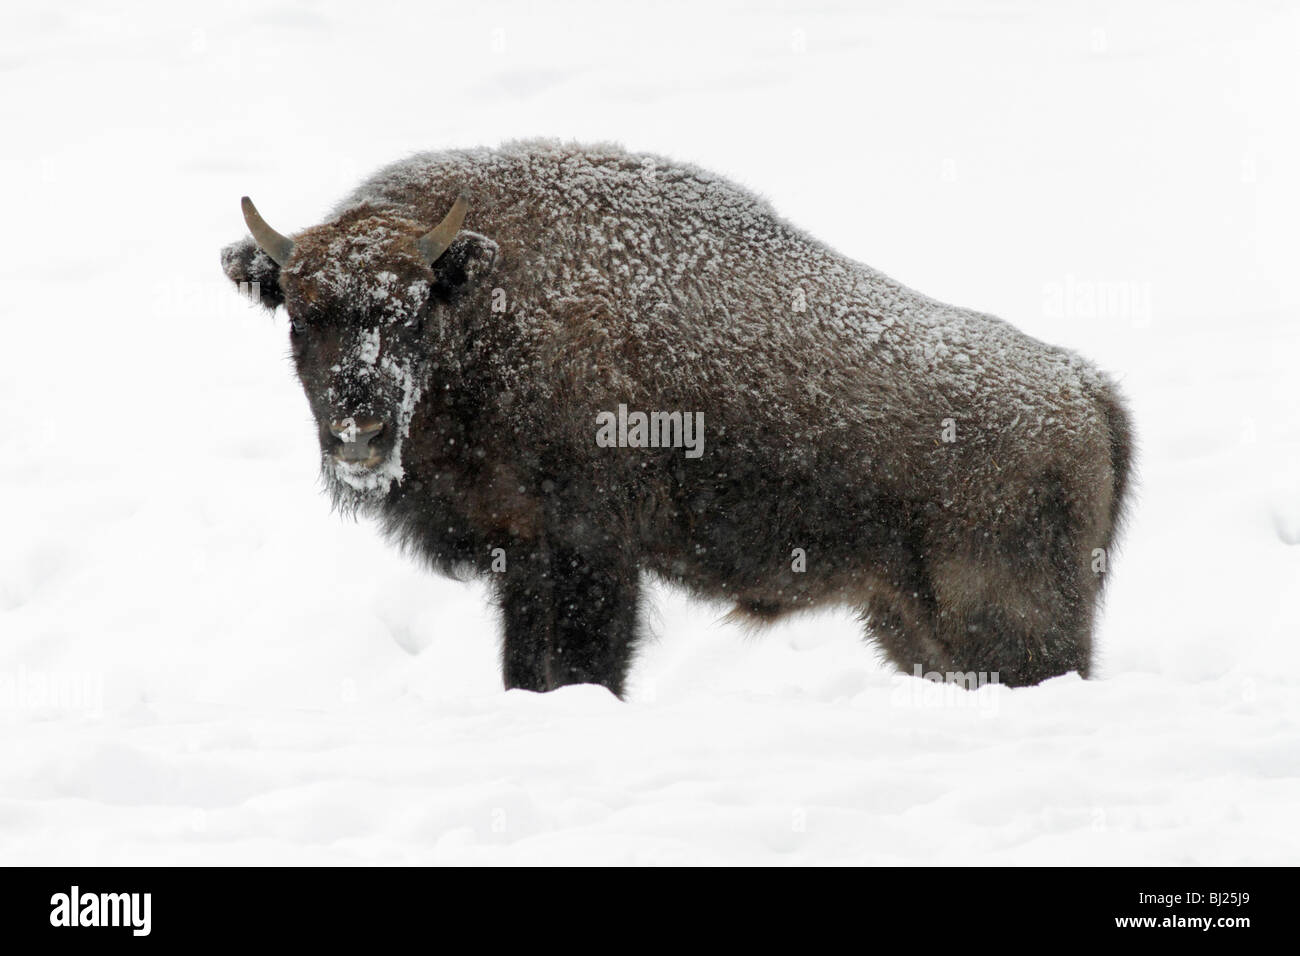 El bisonte europeo, bison bonasus, toro joven, cubierto de nieve, Alemania Foto de stock